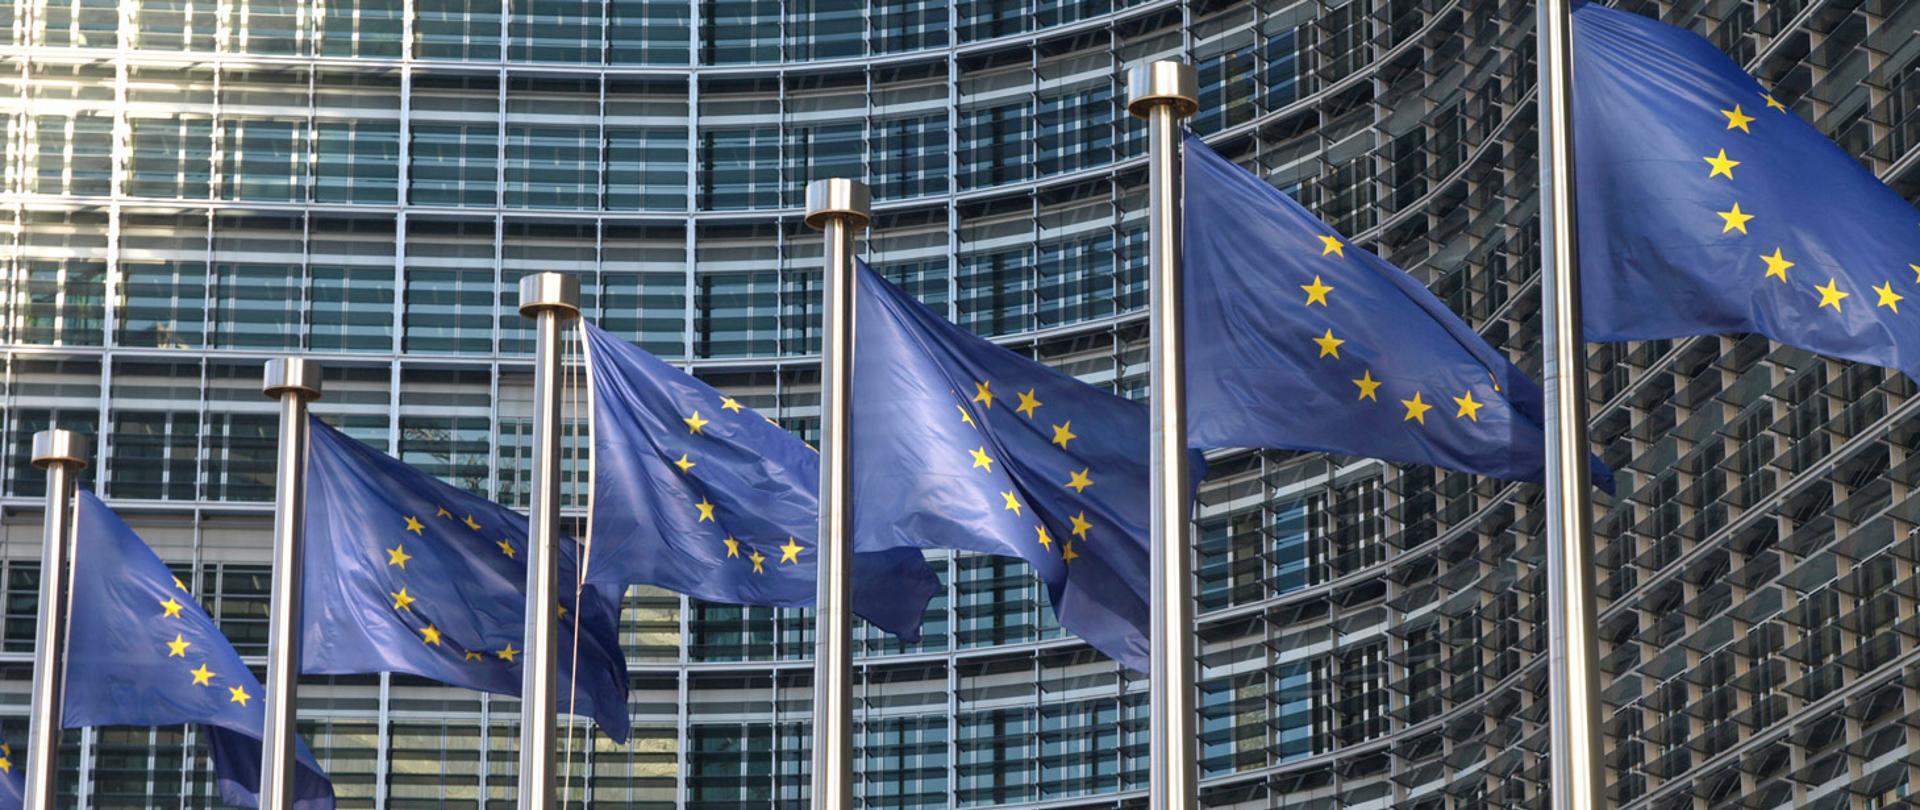 
Flagi Unii Europejskiej na tle budynku Komisji Europejskiej
